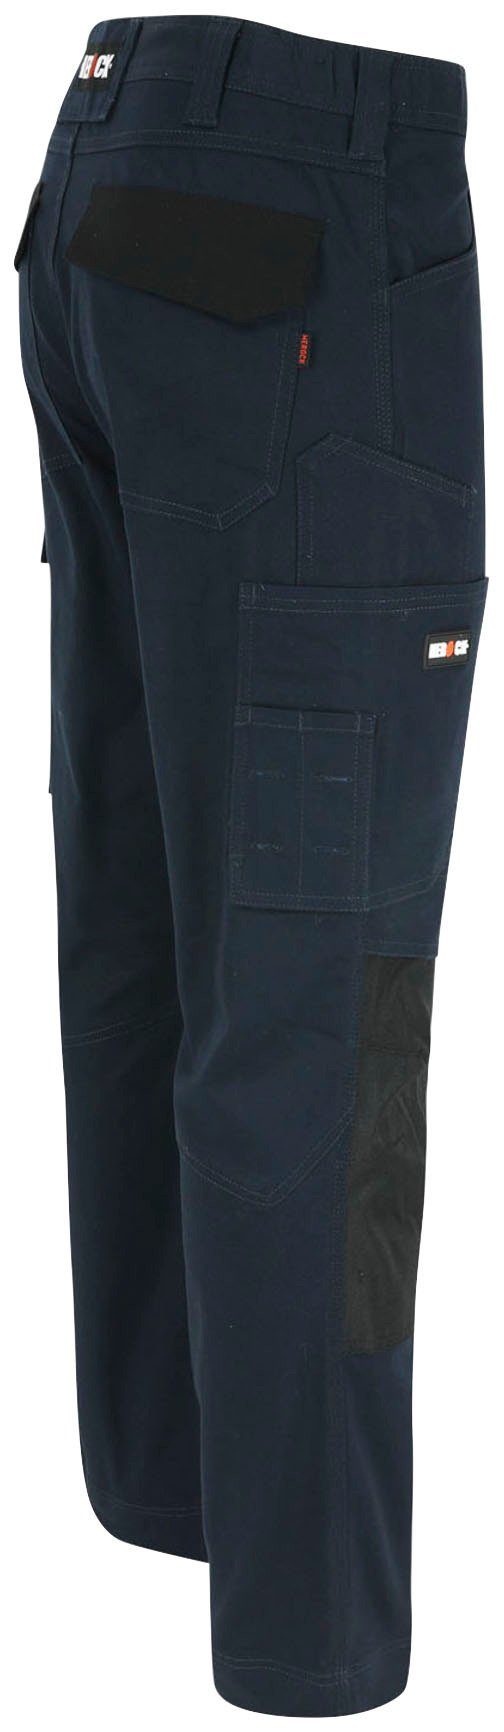 marine Multi-Pocket, wasserabweisend 2-Wege-Stretch, Fit Passform, Slim DERO Arbeitshose Herock